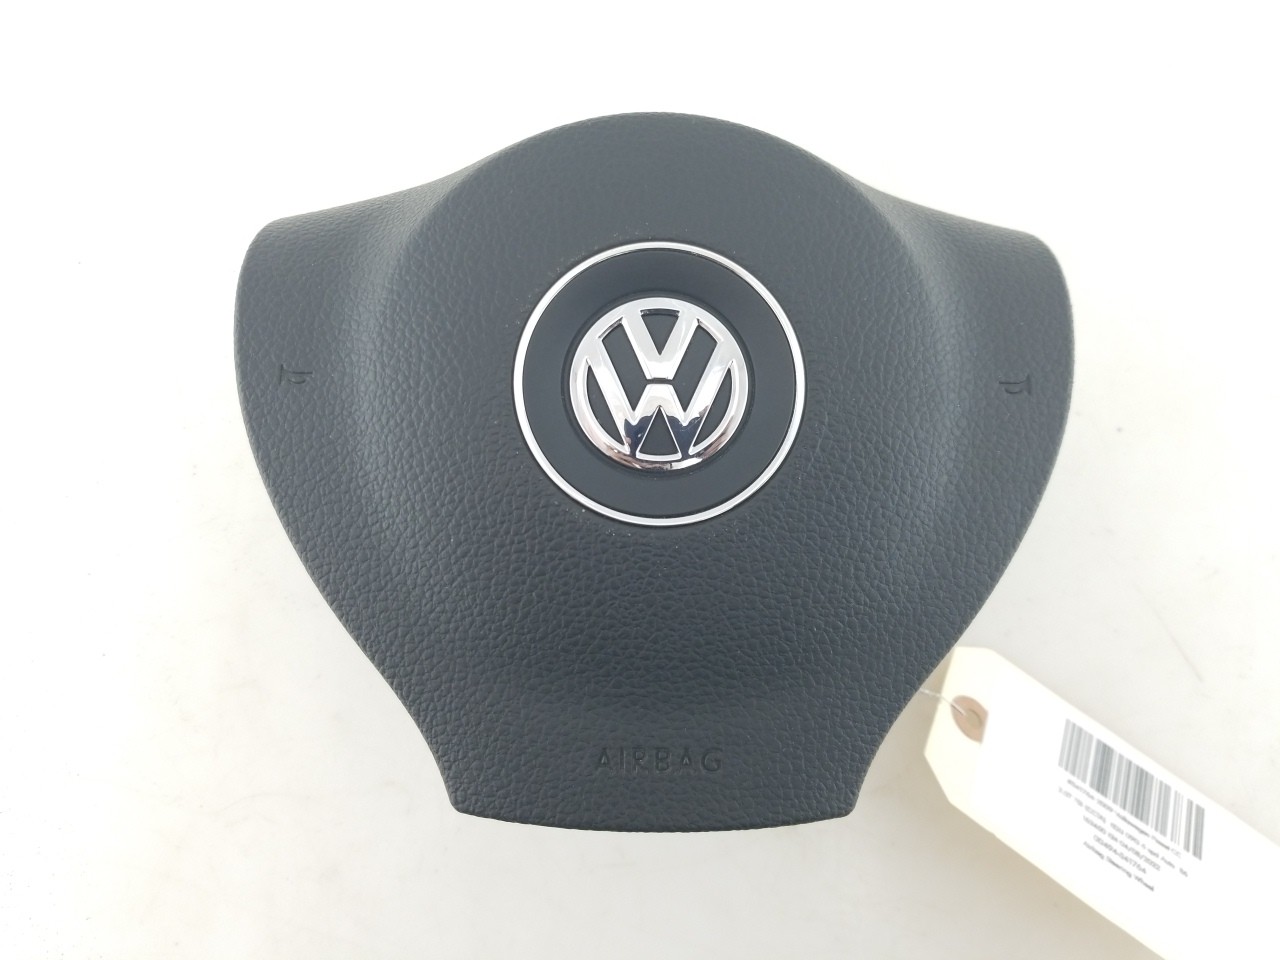 Airbag Steering Wheel